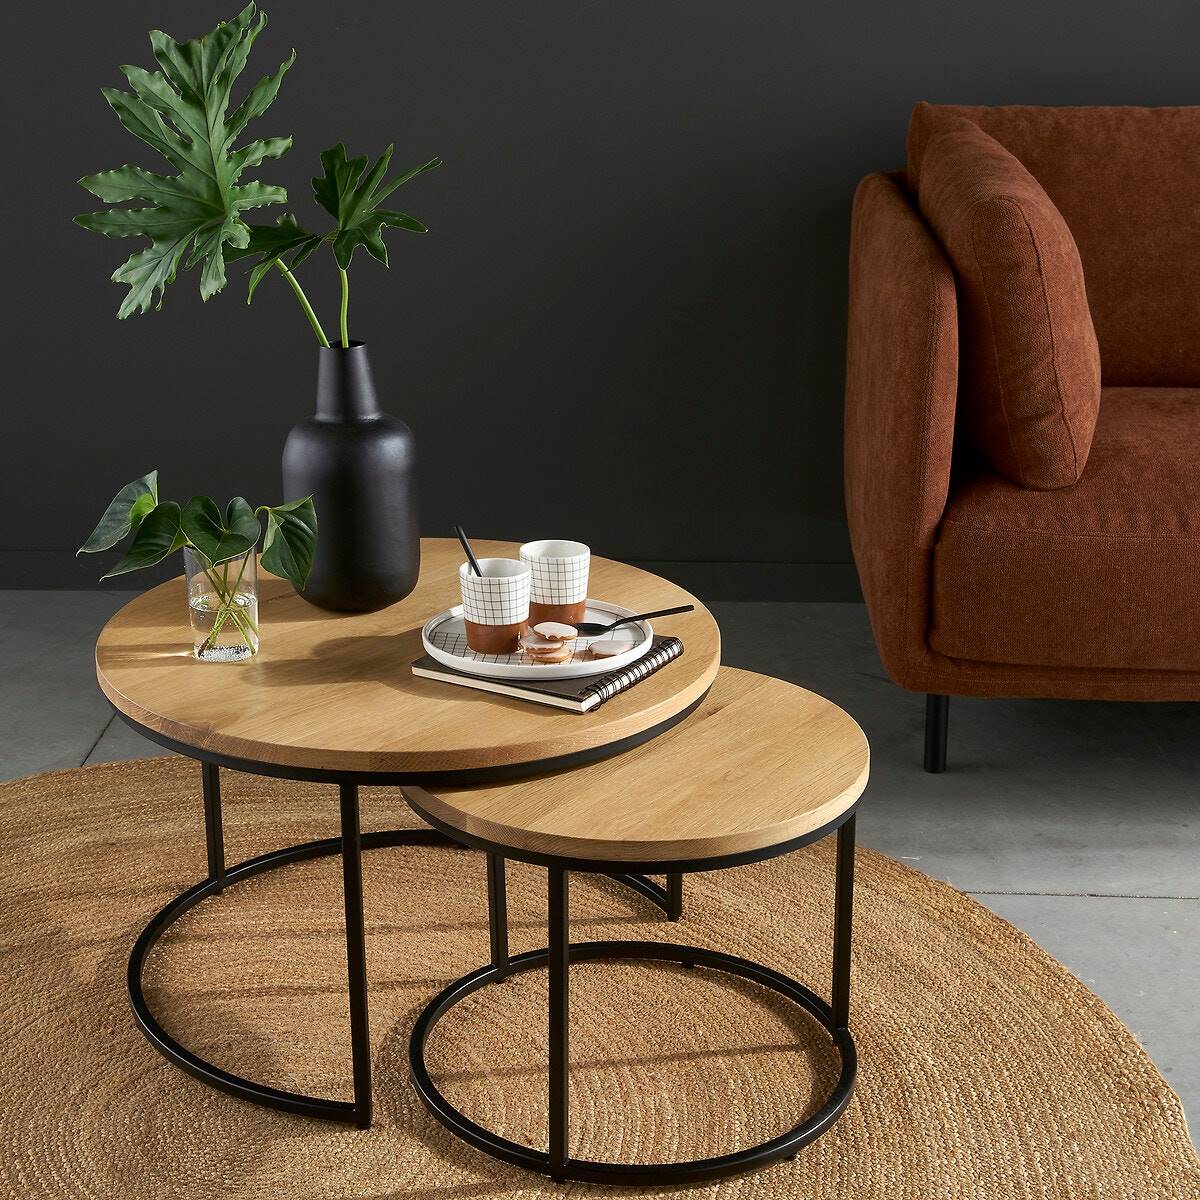 Muebles de salón modernos: unas mesa de centro tipo nido con estructura metálica y superficie de madera. 